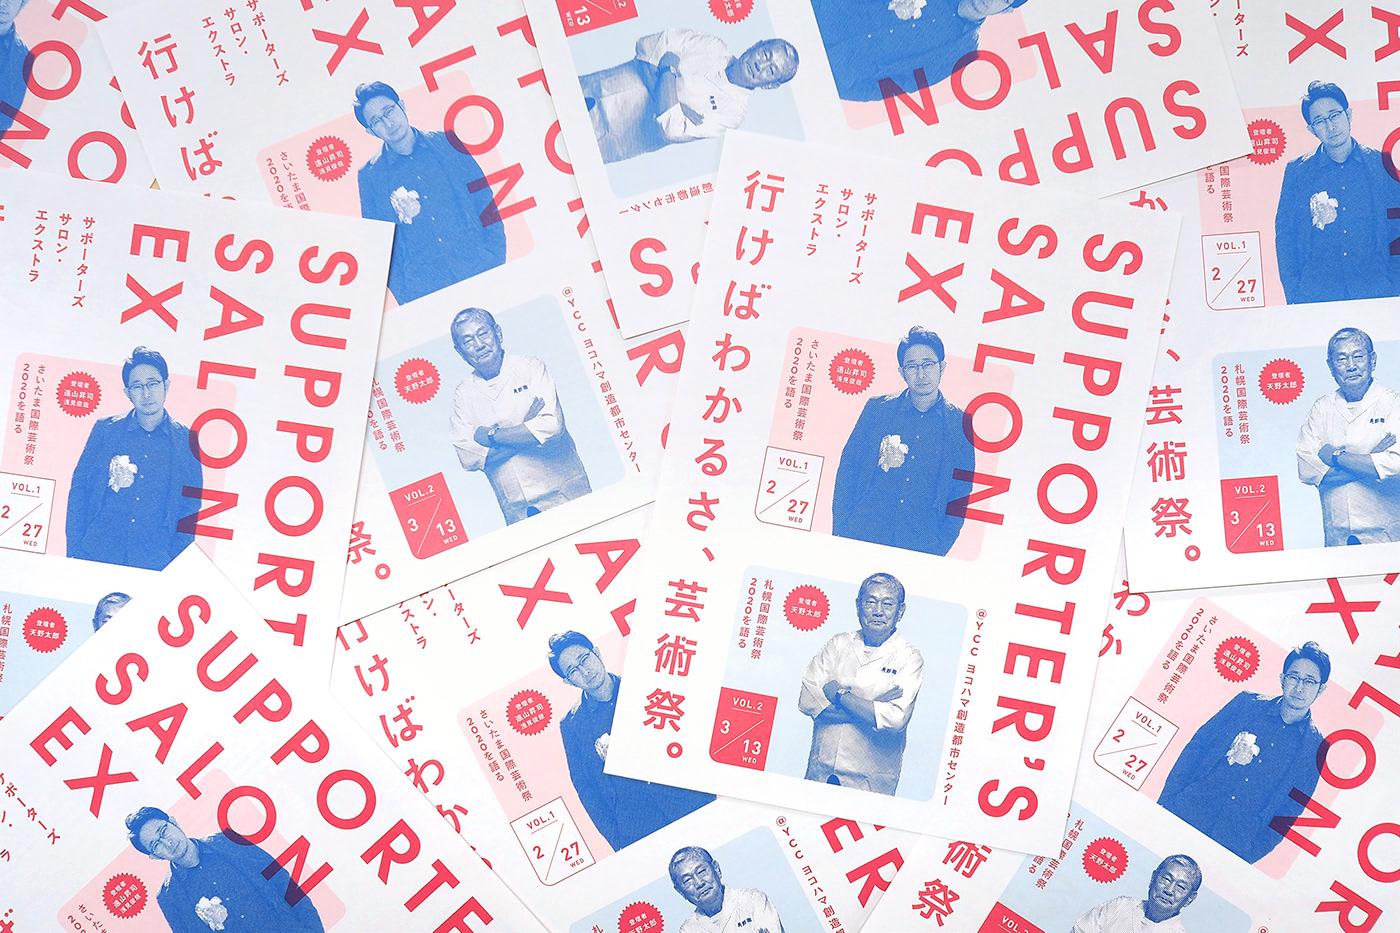 横浜トリエンナーレ yokohama typography   ArtEvent festival 芸術祭 黄金町エリアマネジメント イベント